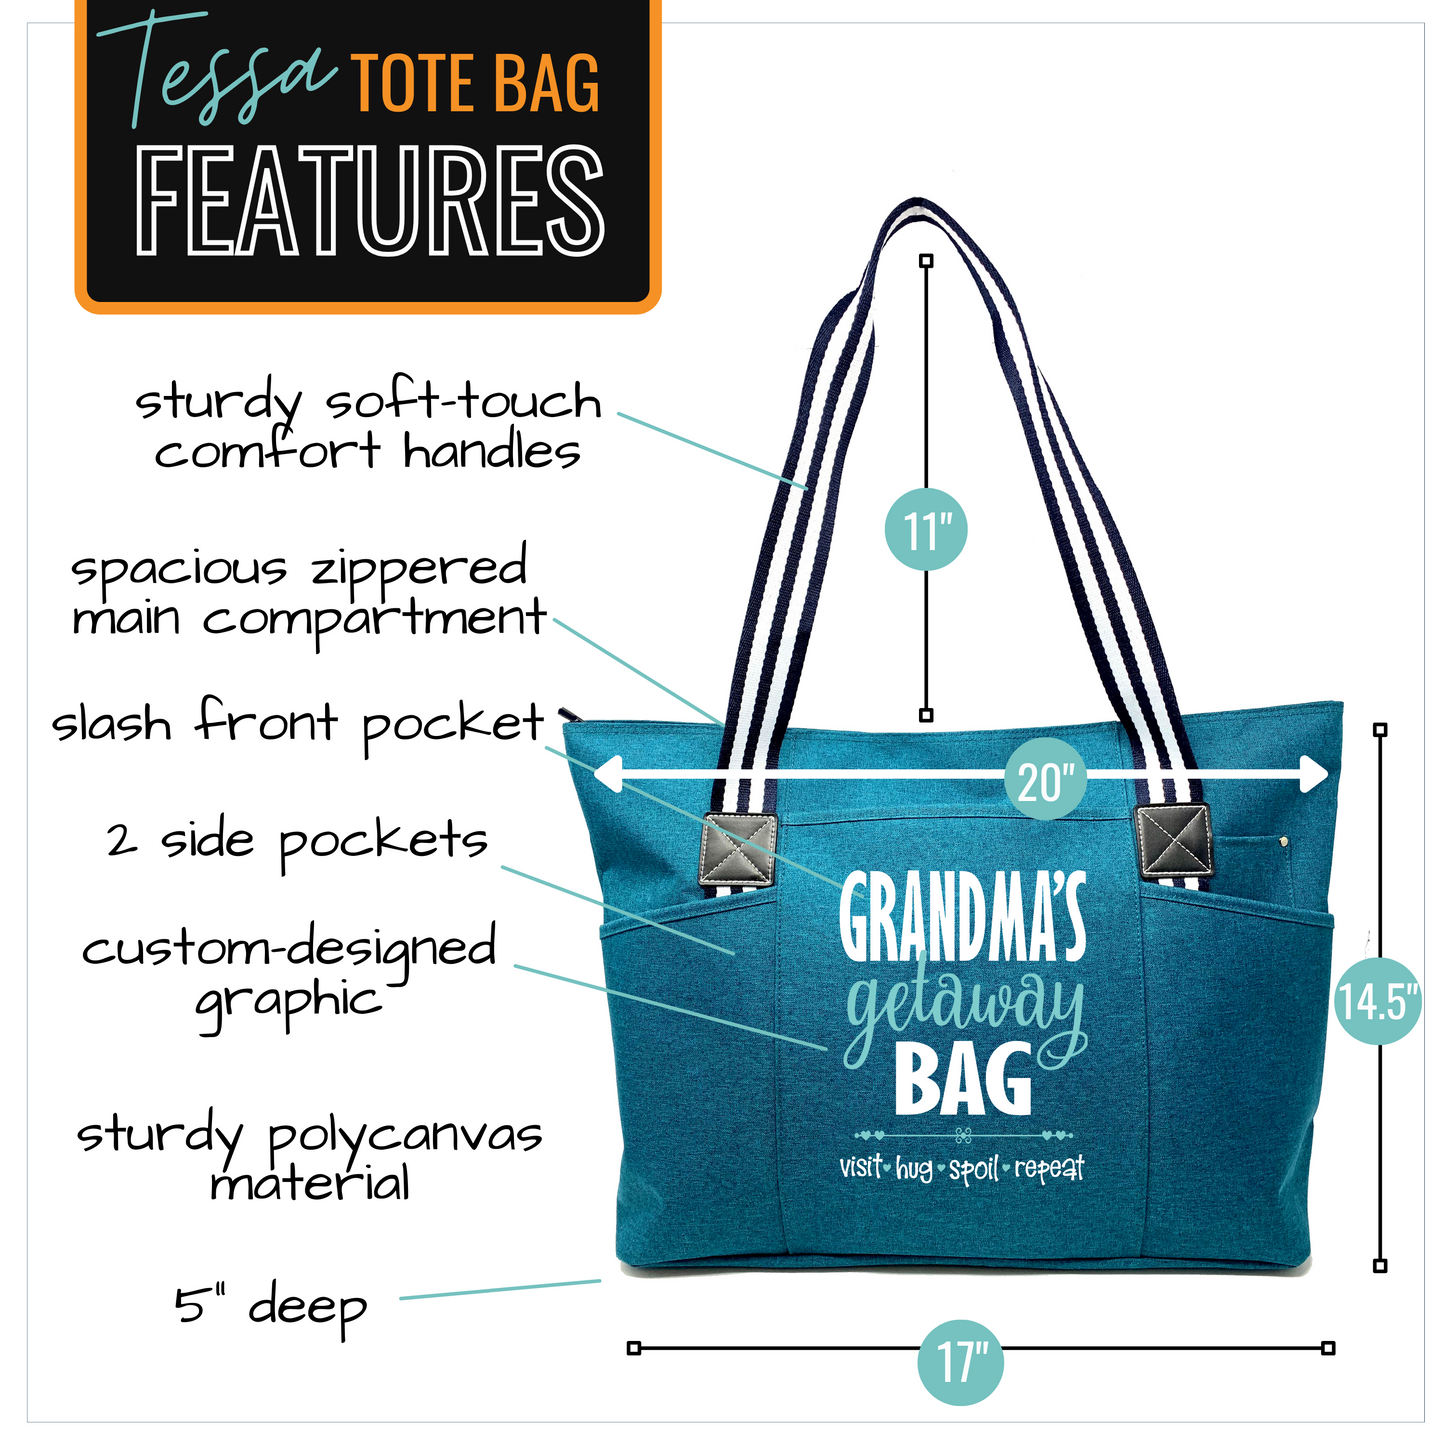 Grandma's Getaway Tessa Teal Tote Bag for Grandmothers